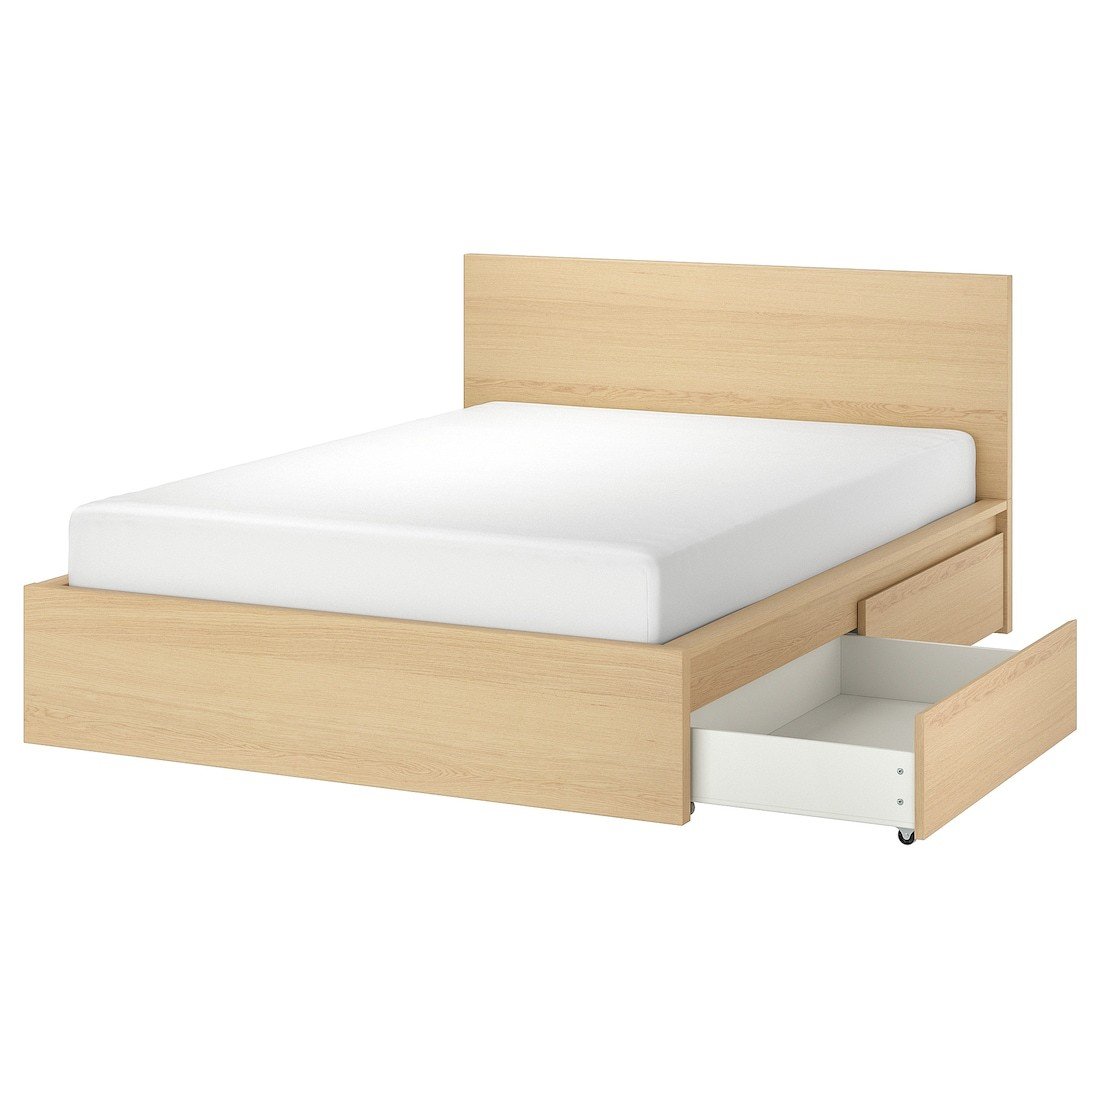 MALM МАЛЬМ Ліжко двоспальне з 4 шухлядами, шпон дуба білений / Lindbåden, 180x200 см